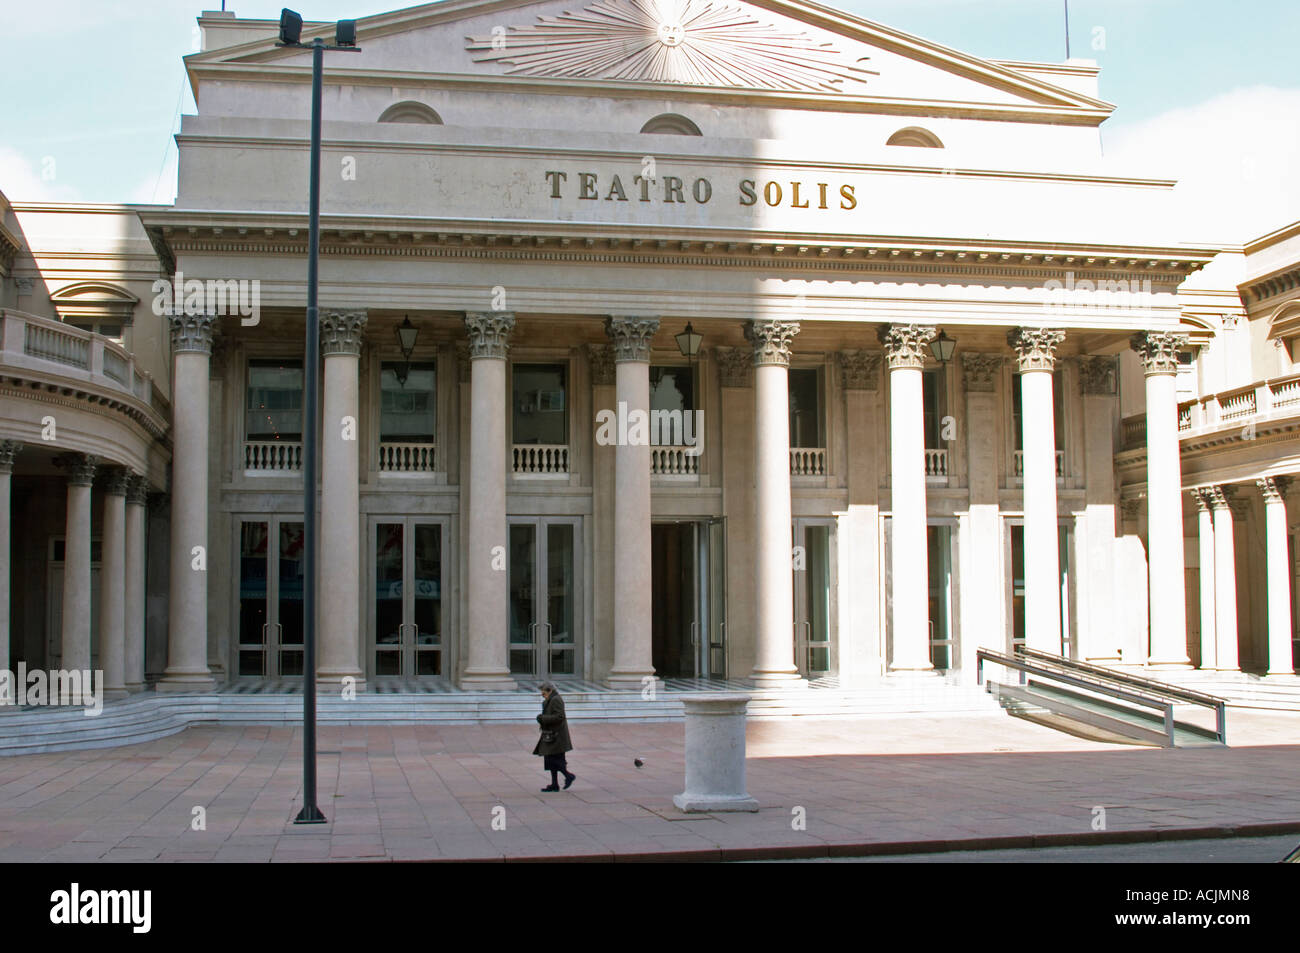 Teatro Teatro Solis nel centro città con imponenti pilastri sulla facciata, una piccola donna in nero a piedi da. Montevideo, Uruguay Sud America Foto Stock